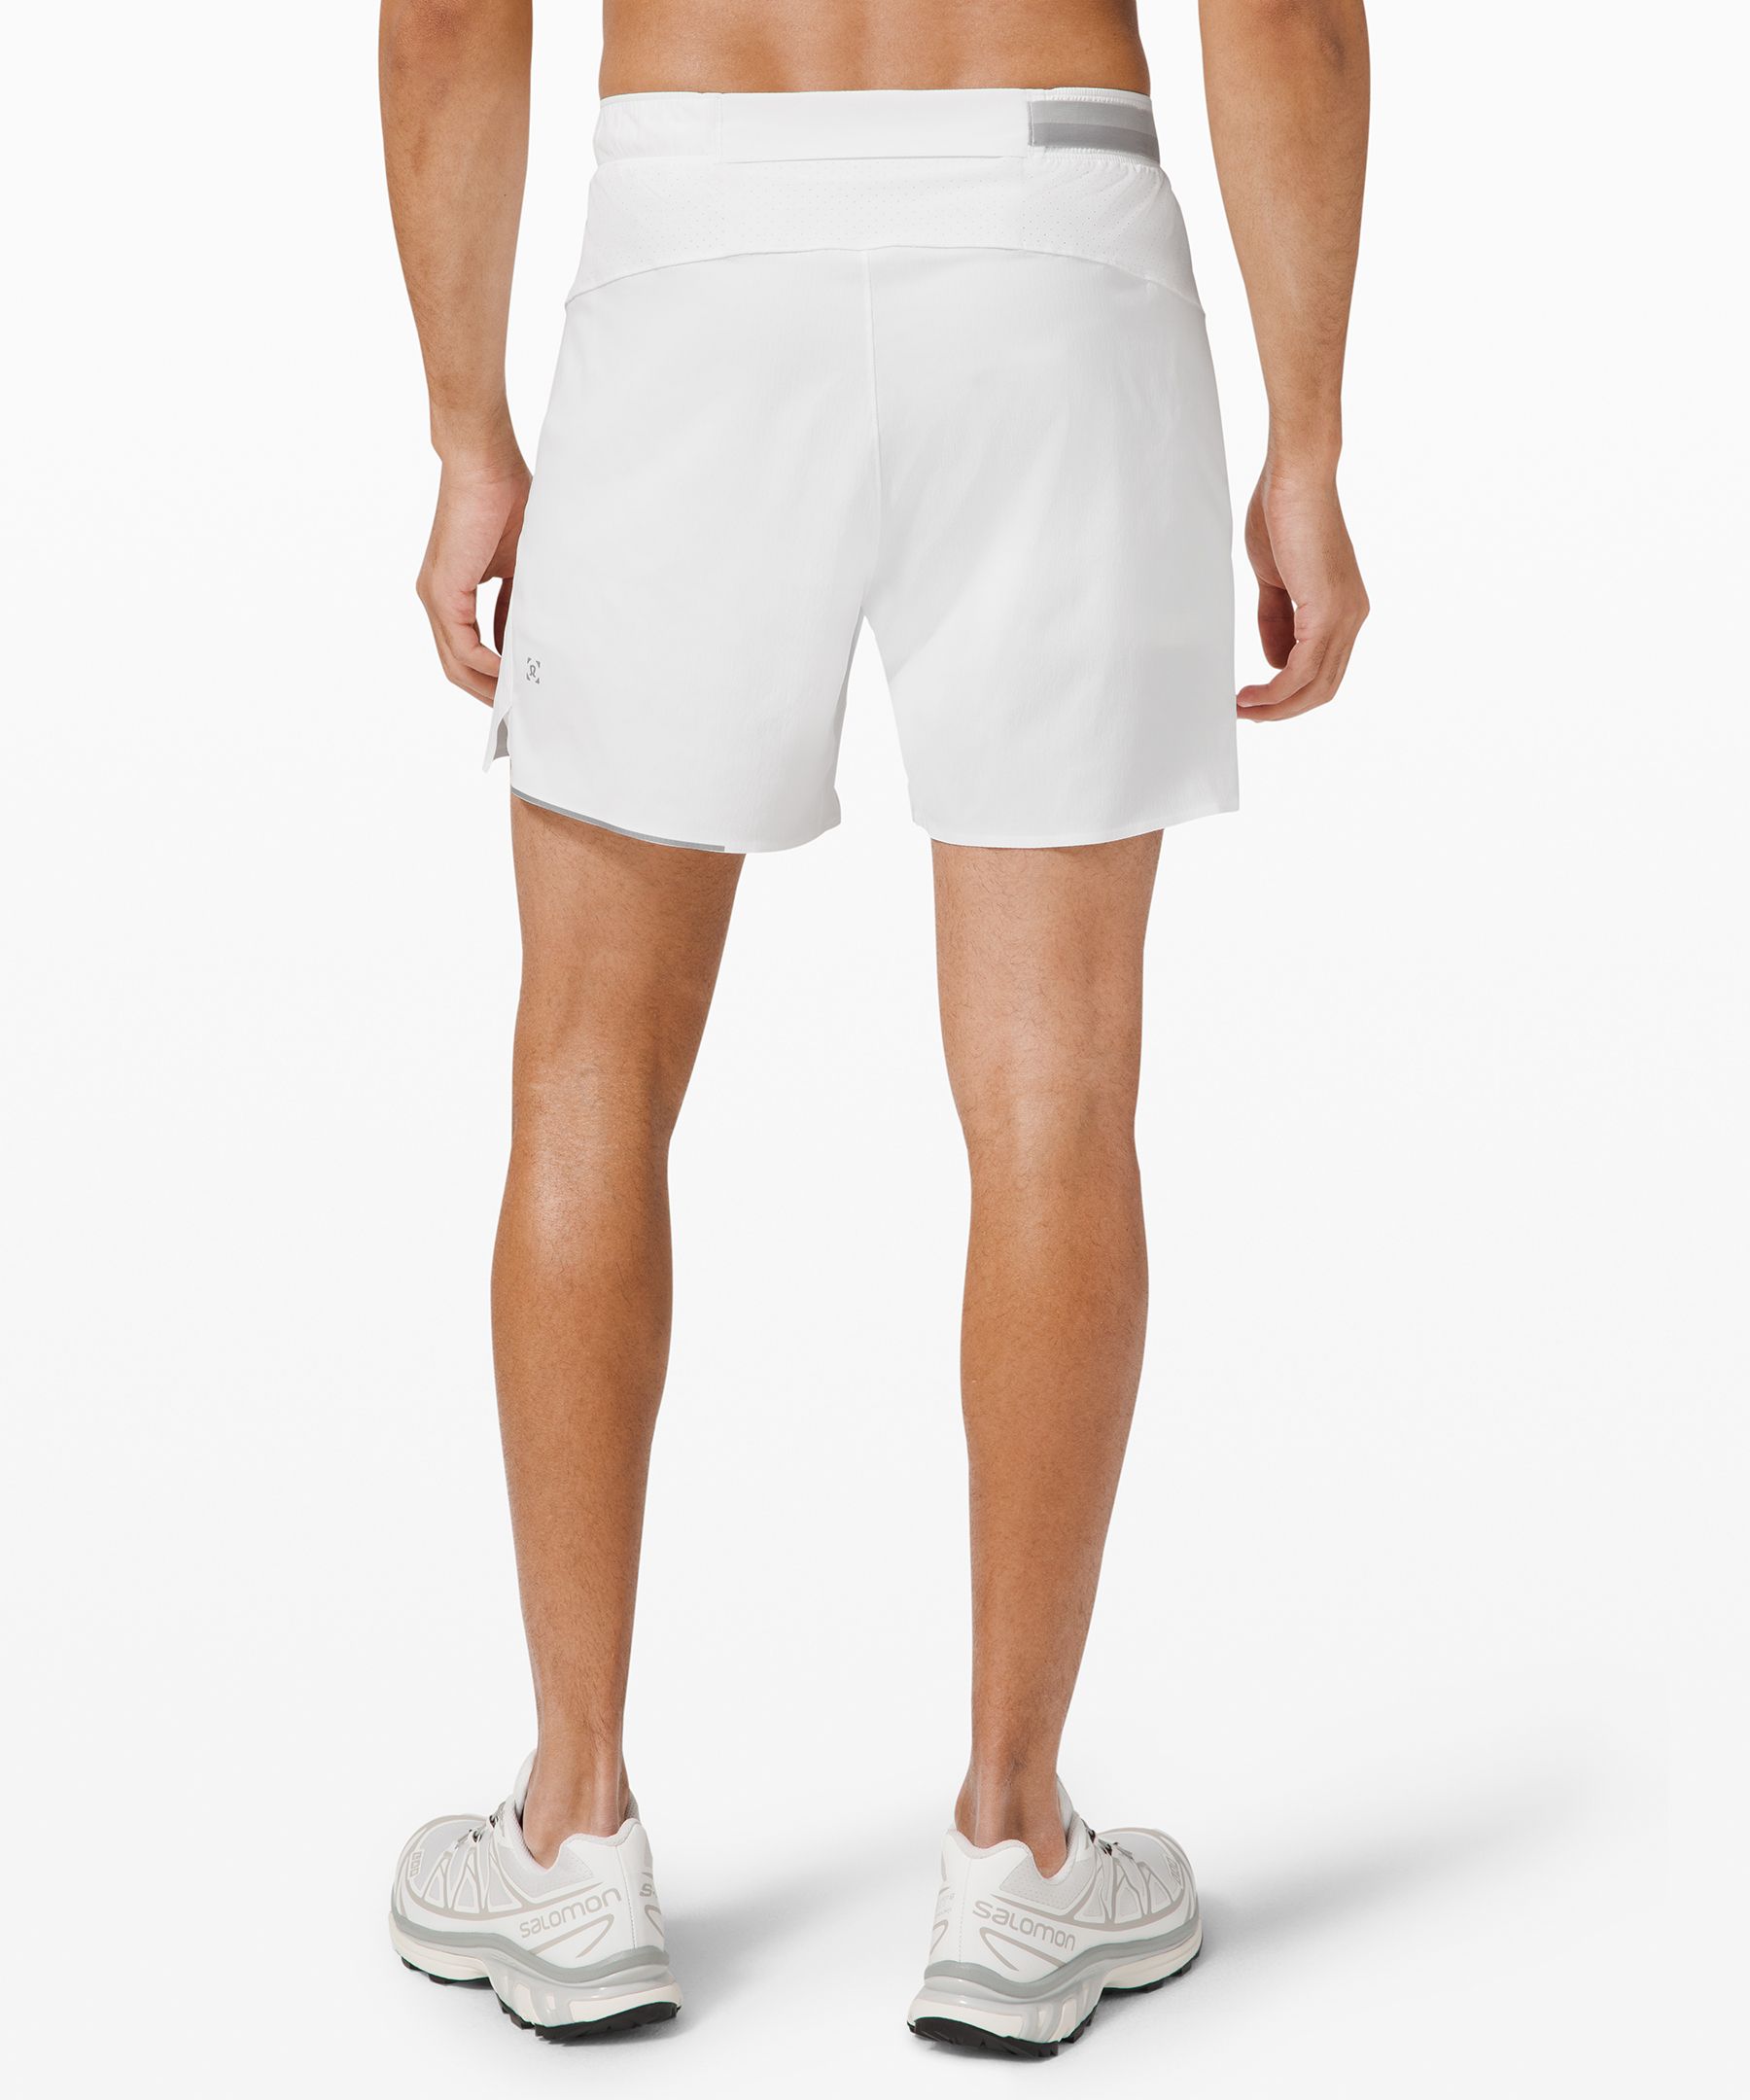 lululemon mens training shorts